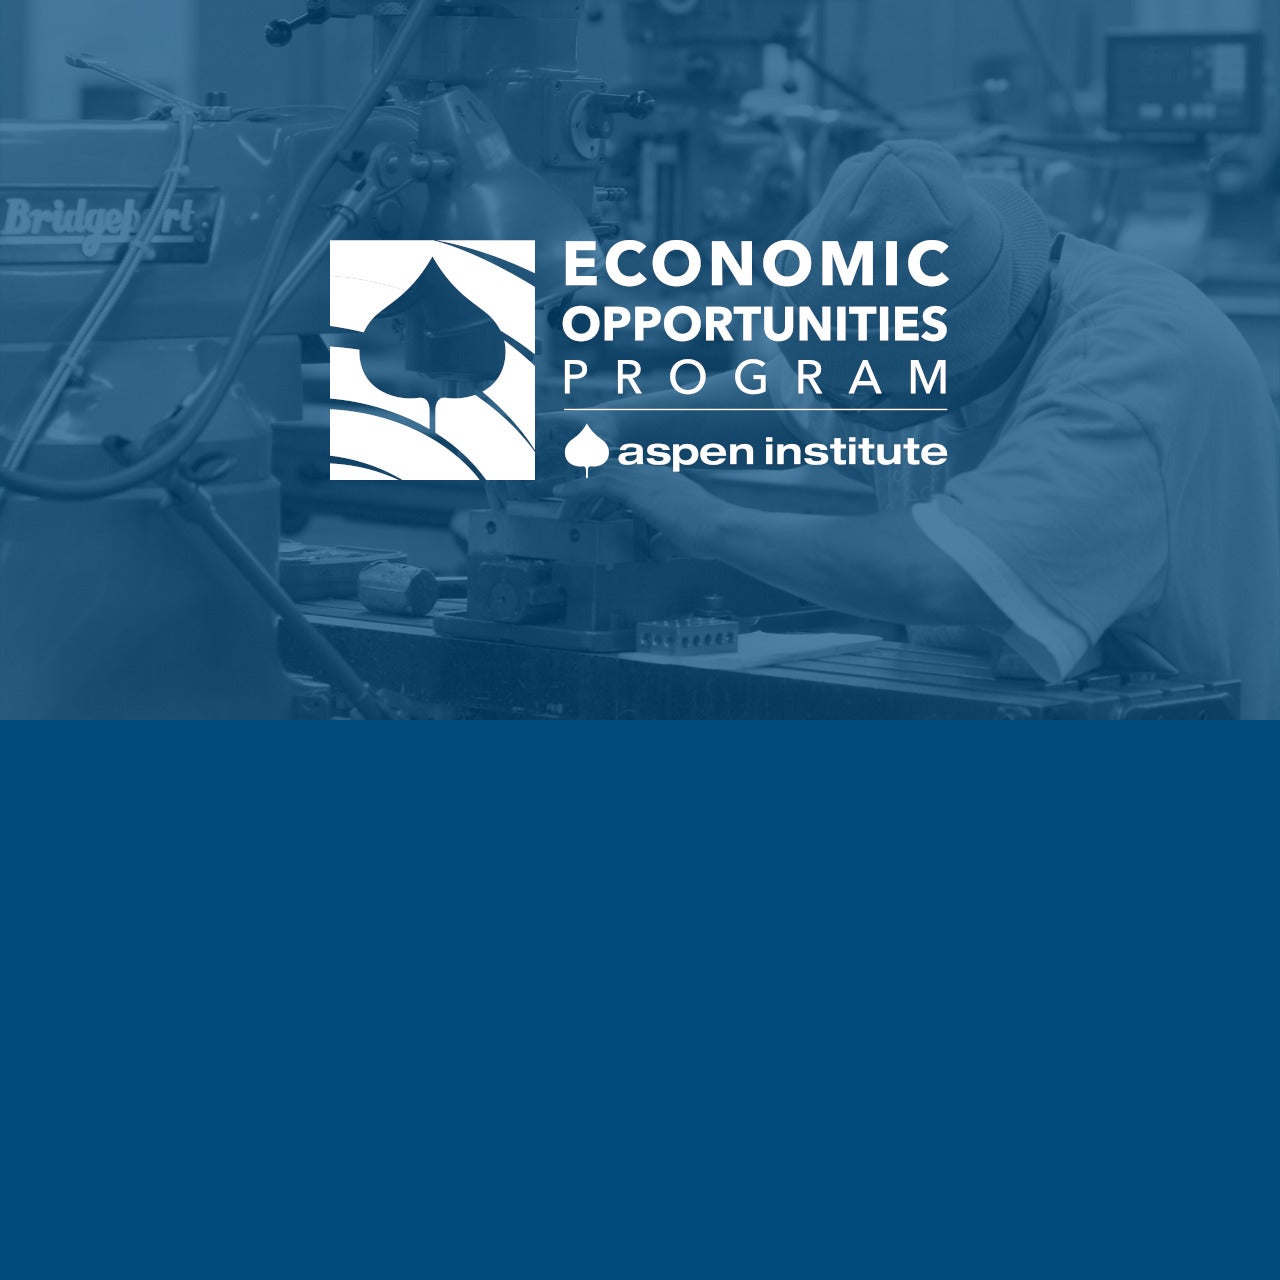 The Aspen Institute Economic Opportunities Program